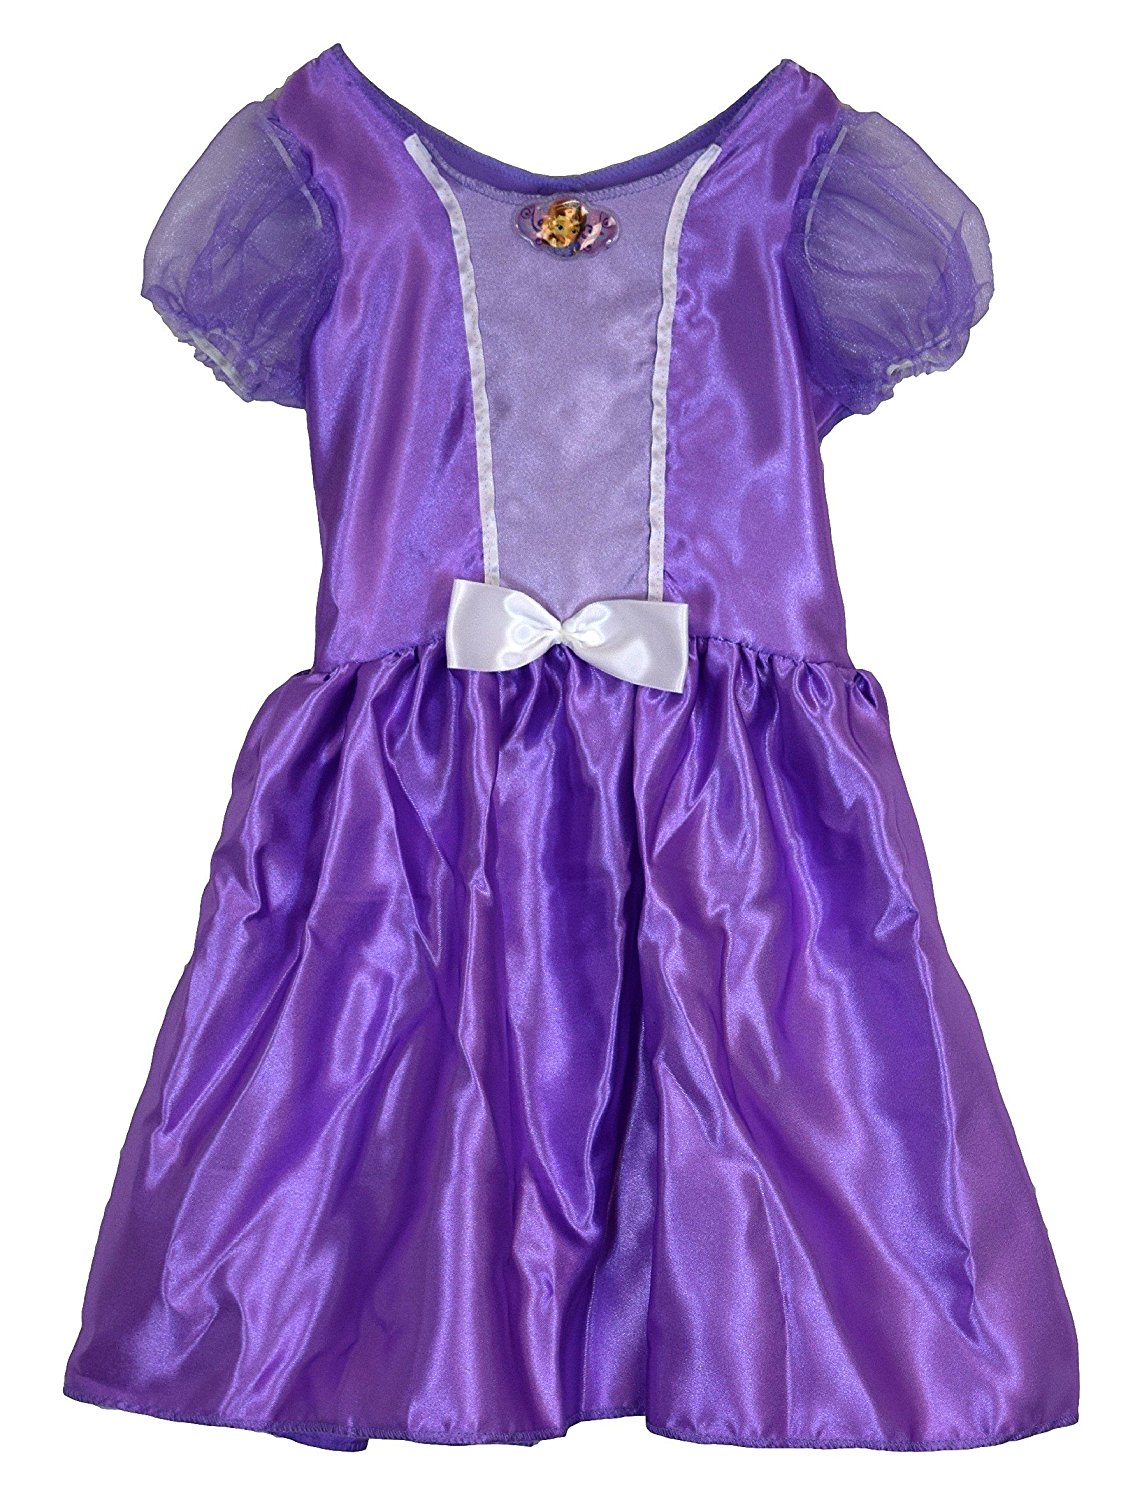 Disney Princess Sofia the First DRESS & TIARA SET (Fits sizes 4-6X) Look just like Princess Sofia - image 2 of 6